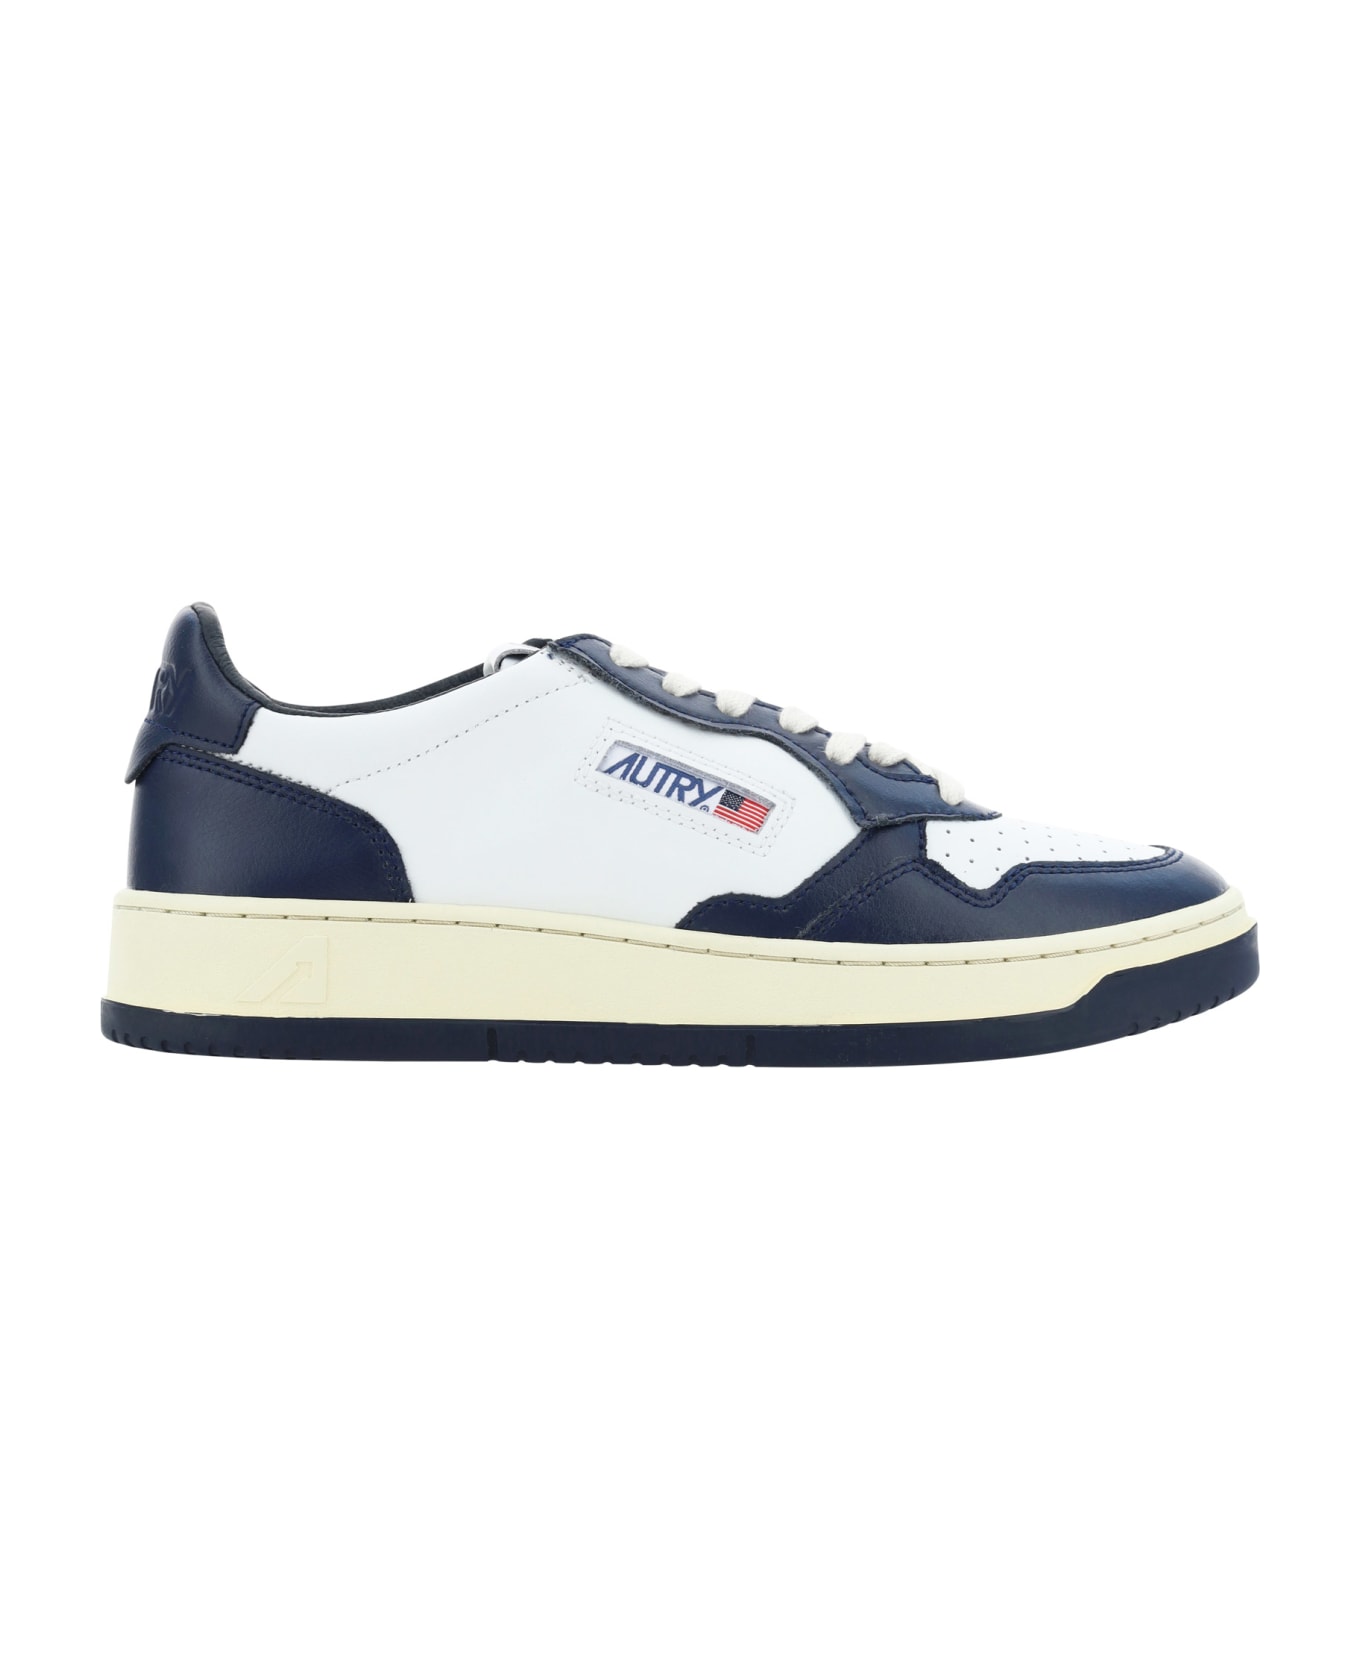 Autry Medialist Low Sneakers - Bianco/blu